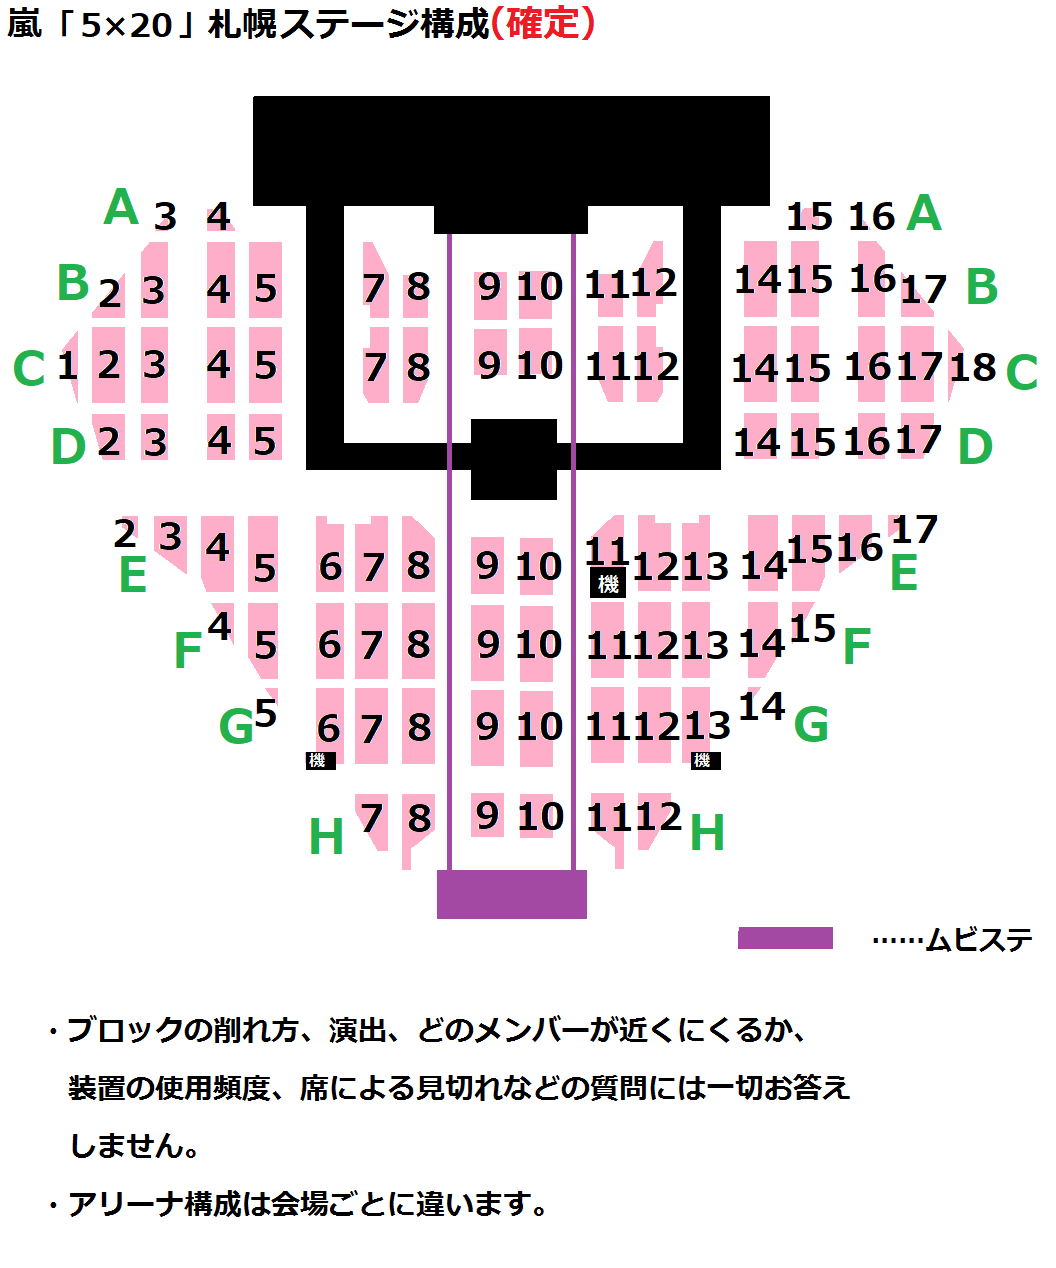 Arashi Anniversary Tour 5 嵐コンデータまとめ Wiki